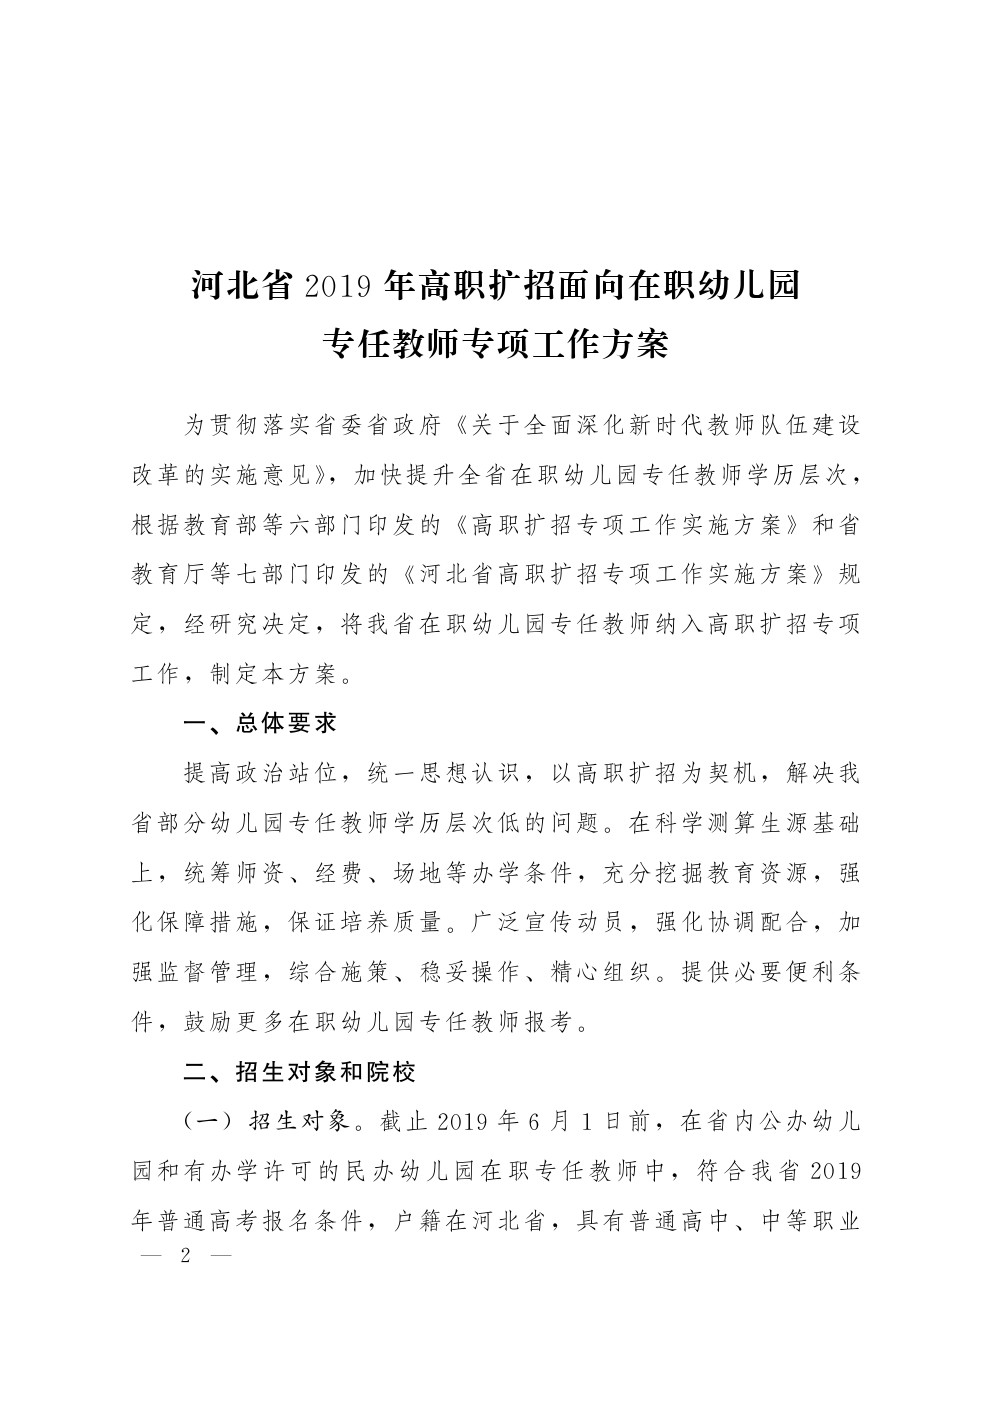 河北省2019年高职扩招面向在职幼儿园专任教师专项工作方案 